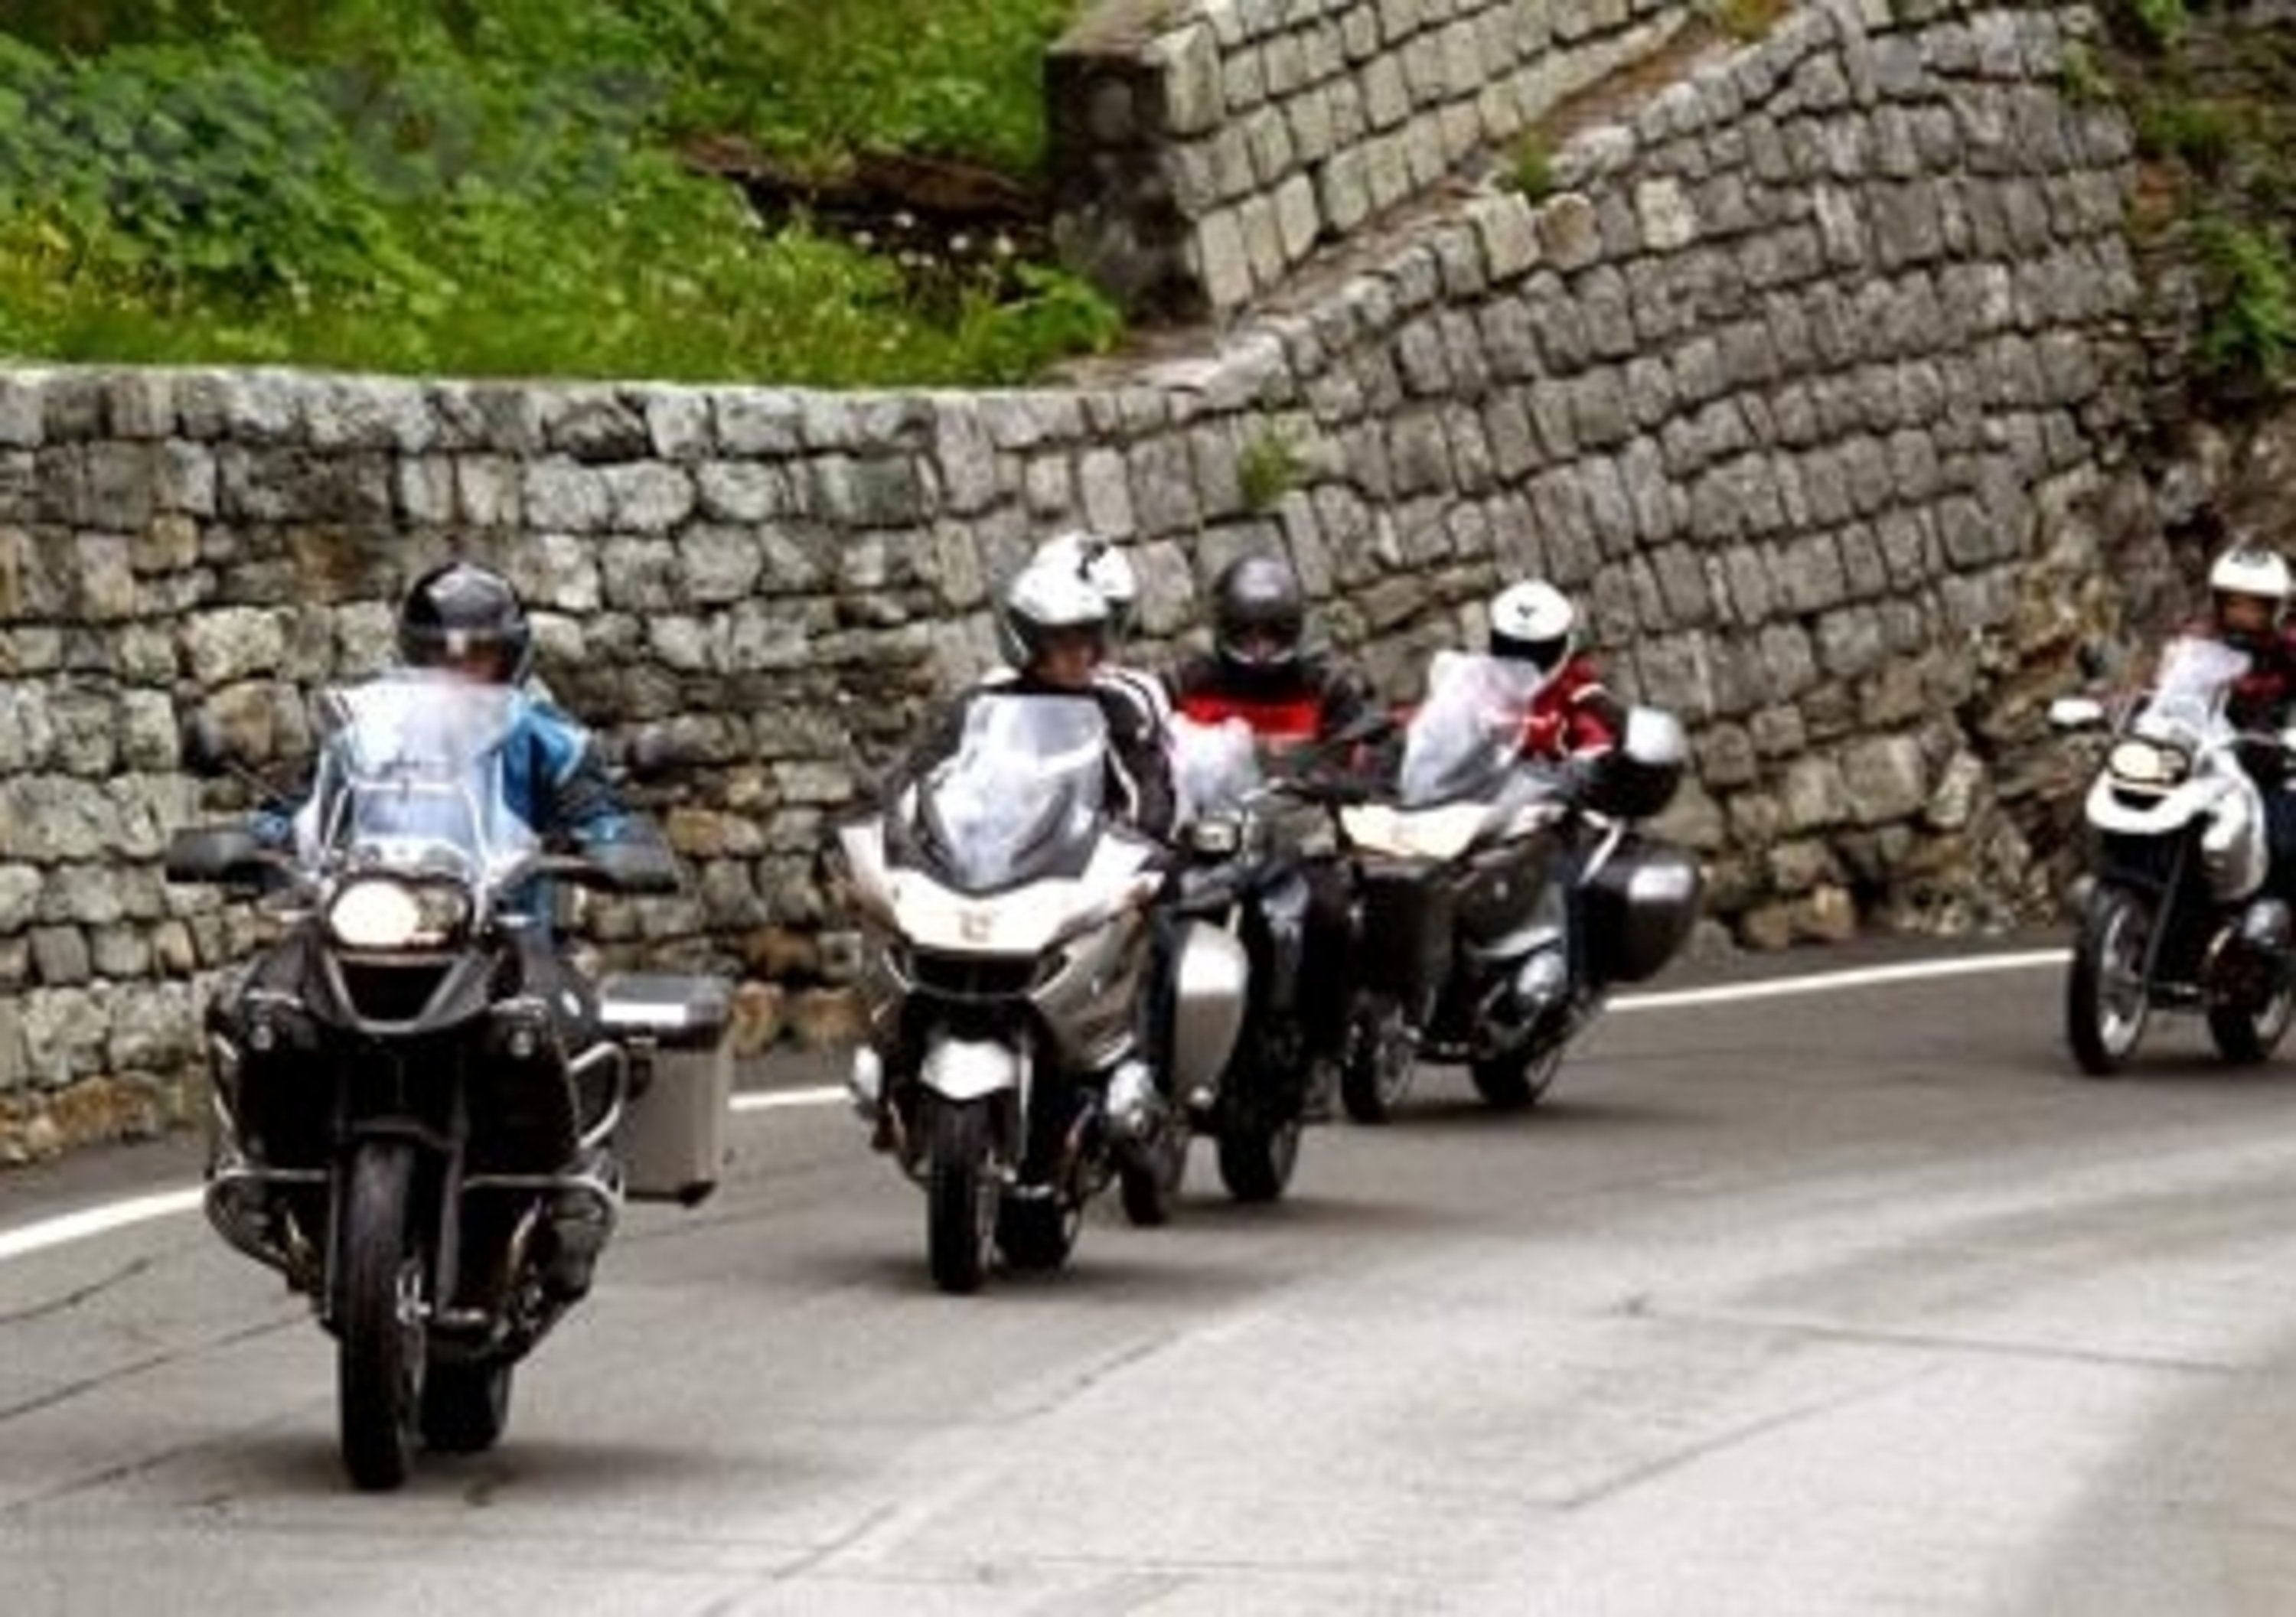 Riderscan: compila anche tu il questionario per i motociclisti europei